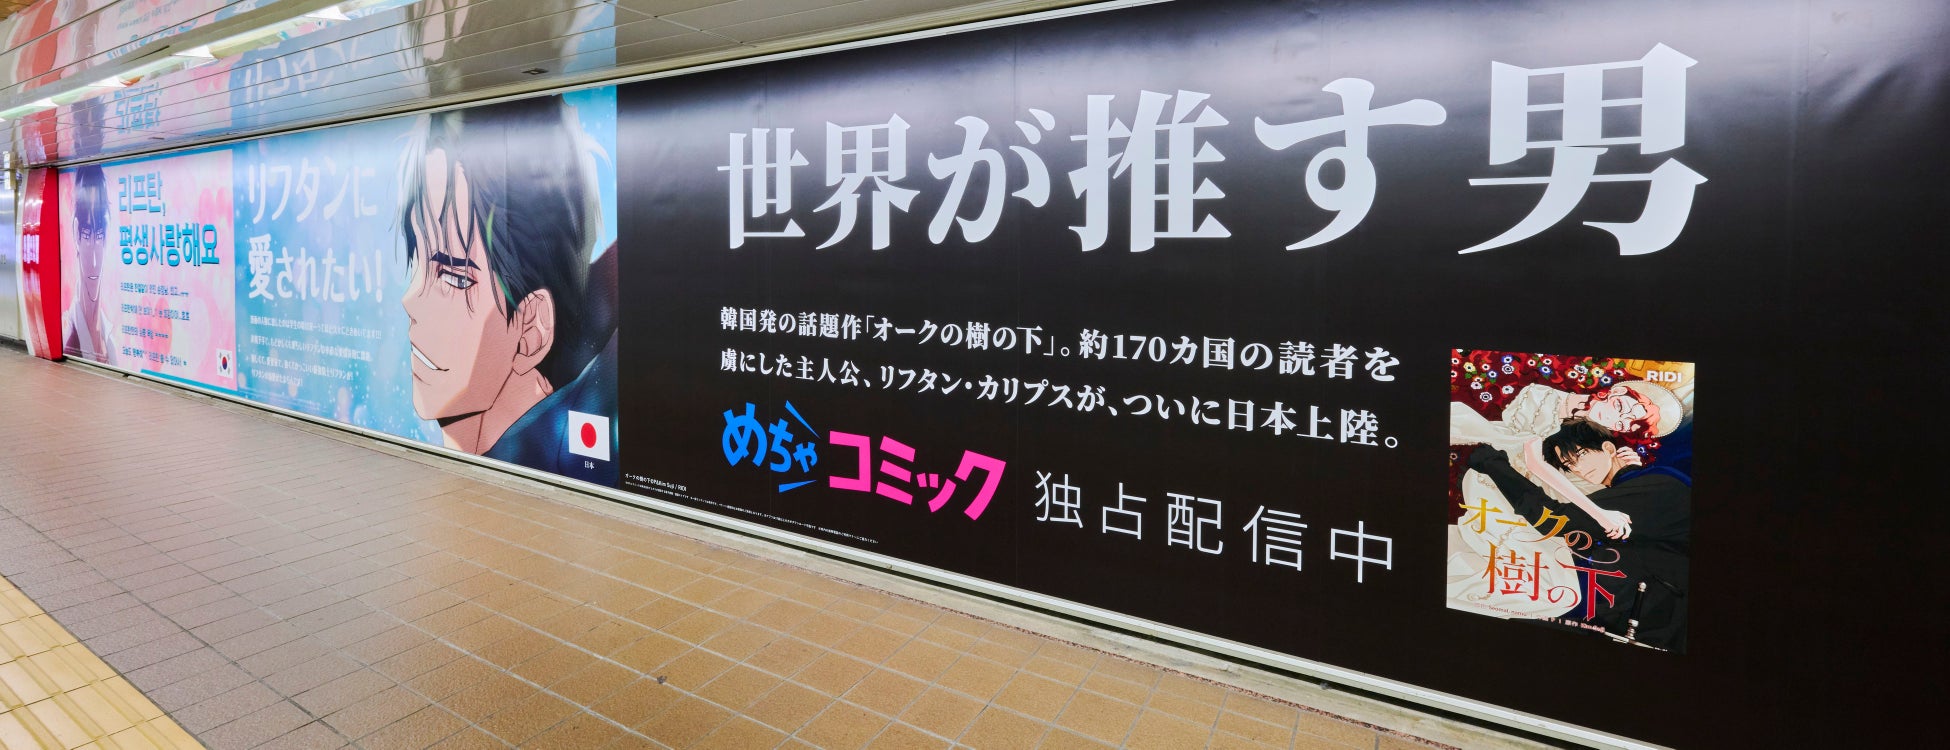 漫画大国日本に上陸した 「世界が推す男」リフタン・カリプス　全長約80m、10ヵ国の巨大「応援広告」が新宿に出現！